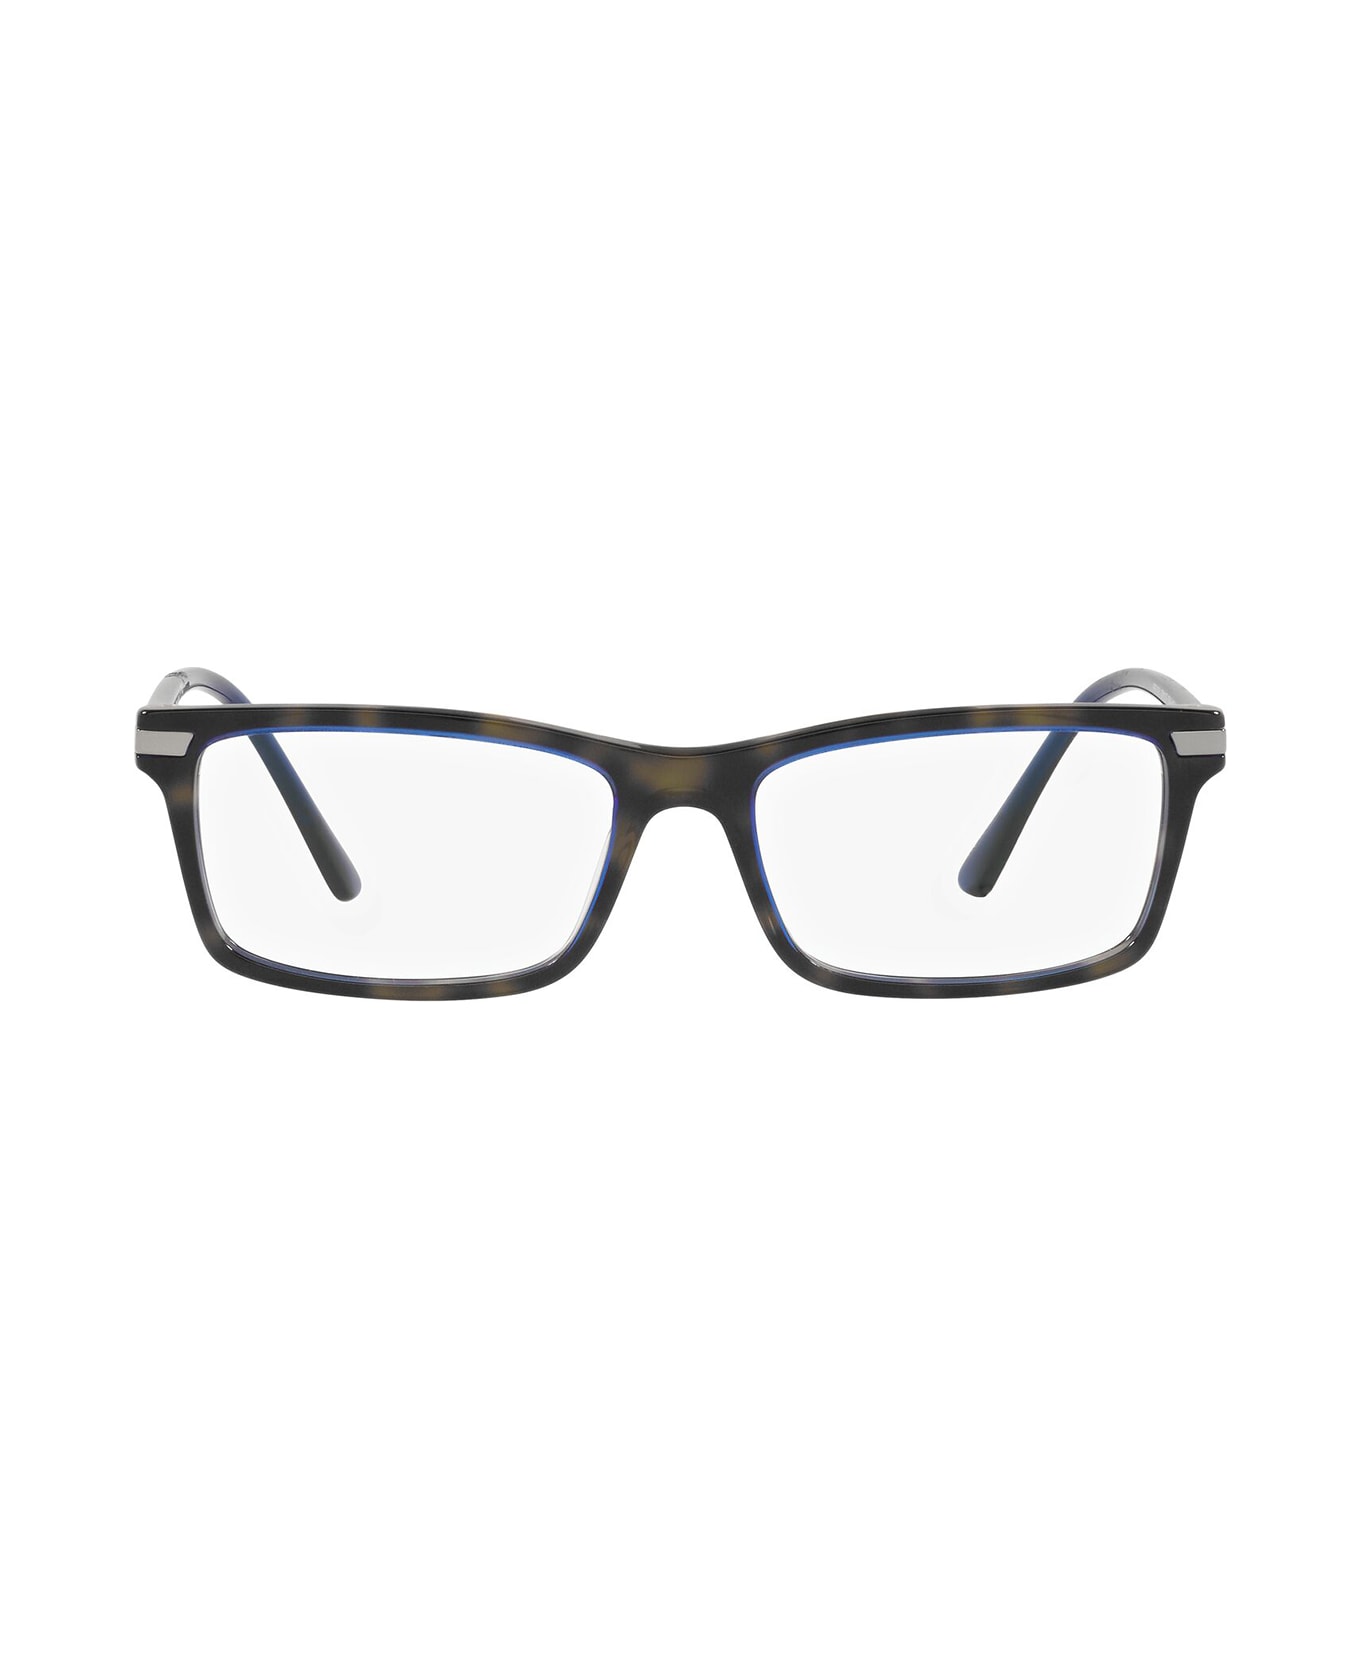 Prada Eyewear Pr 03yv Denim Tortoise Glasses - Denim Tortoise アイウェア